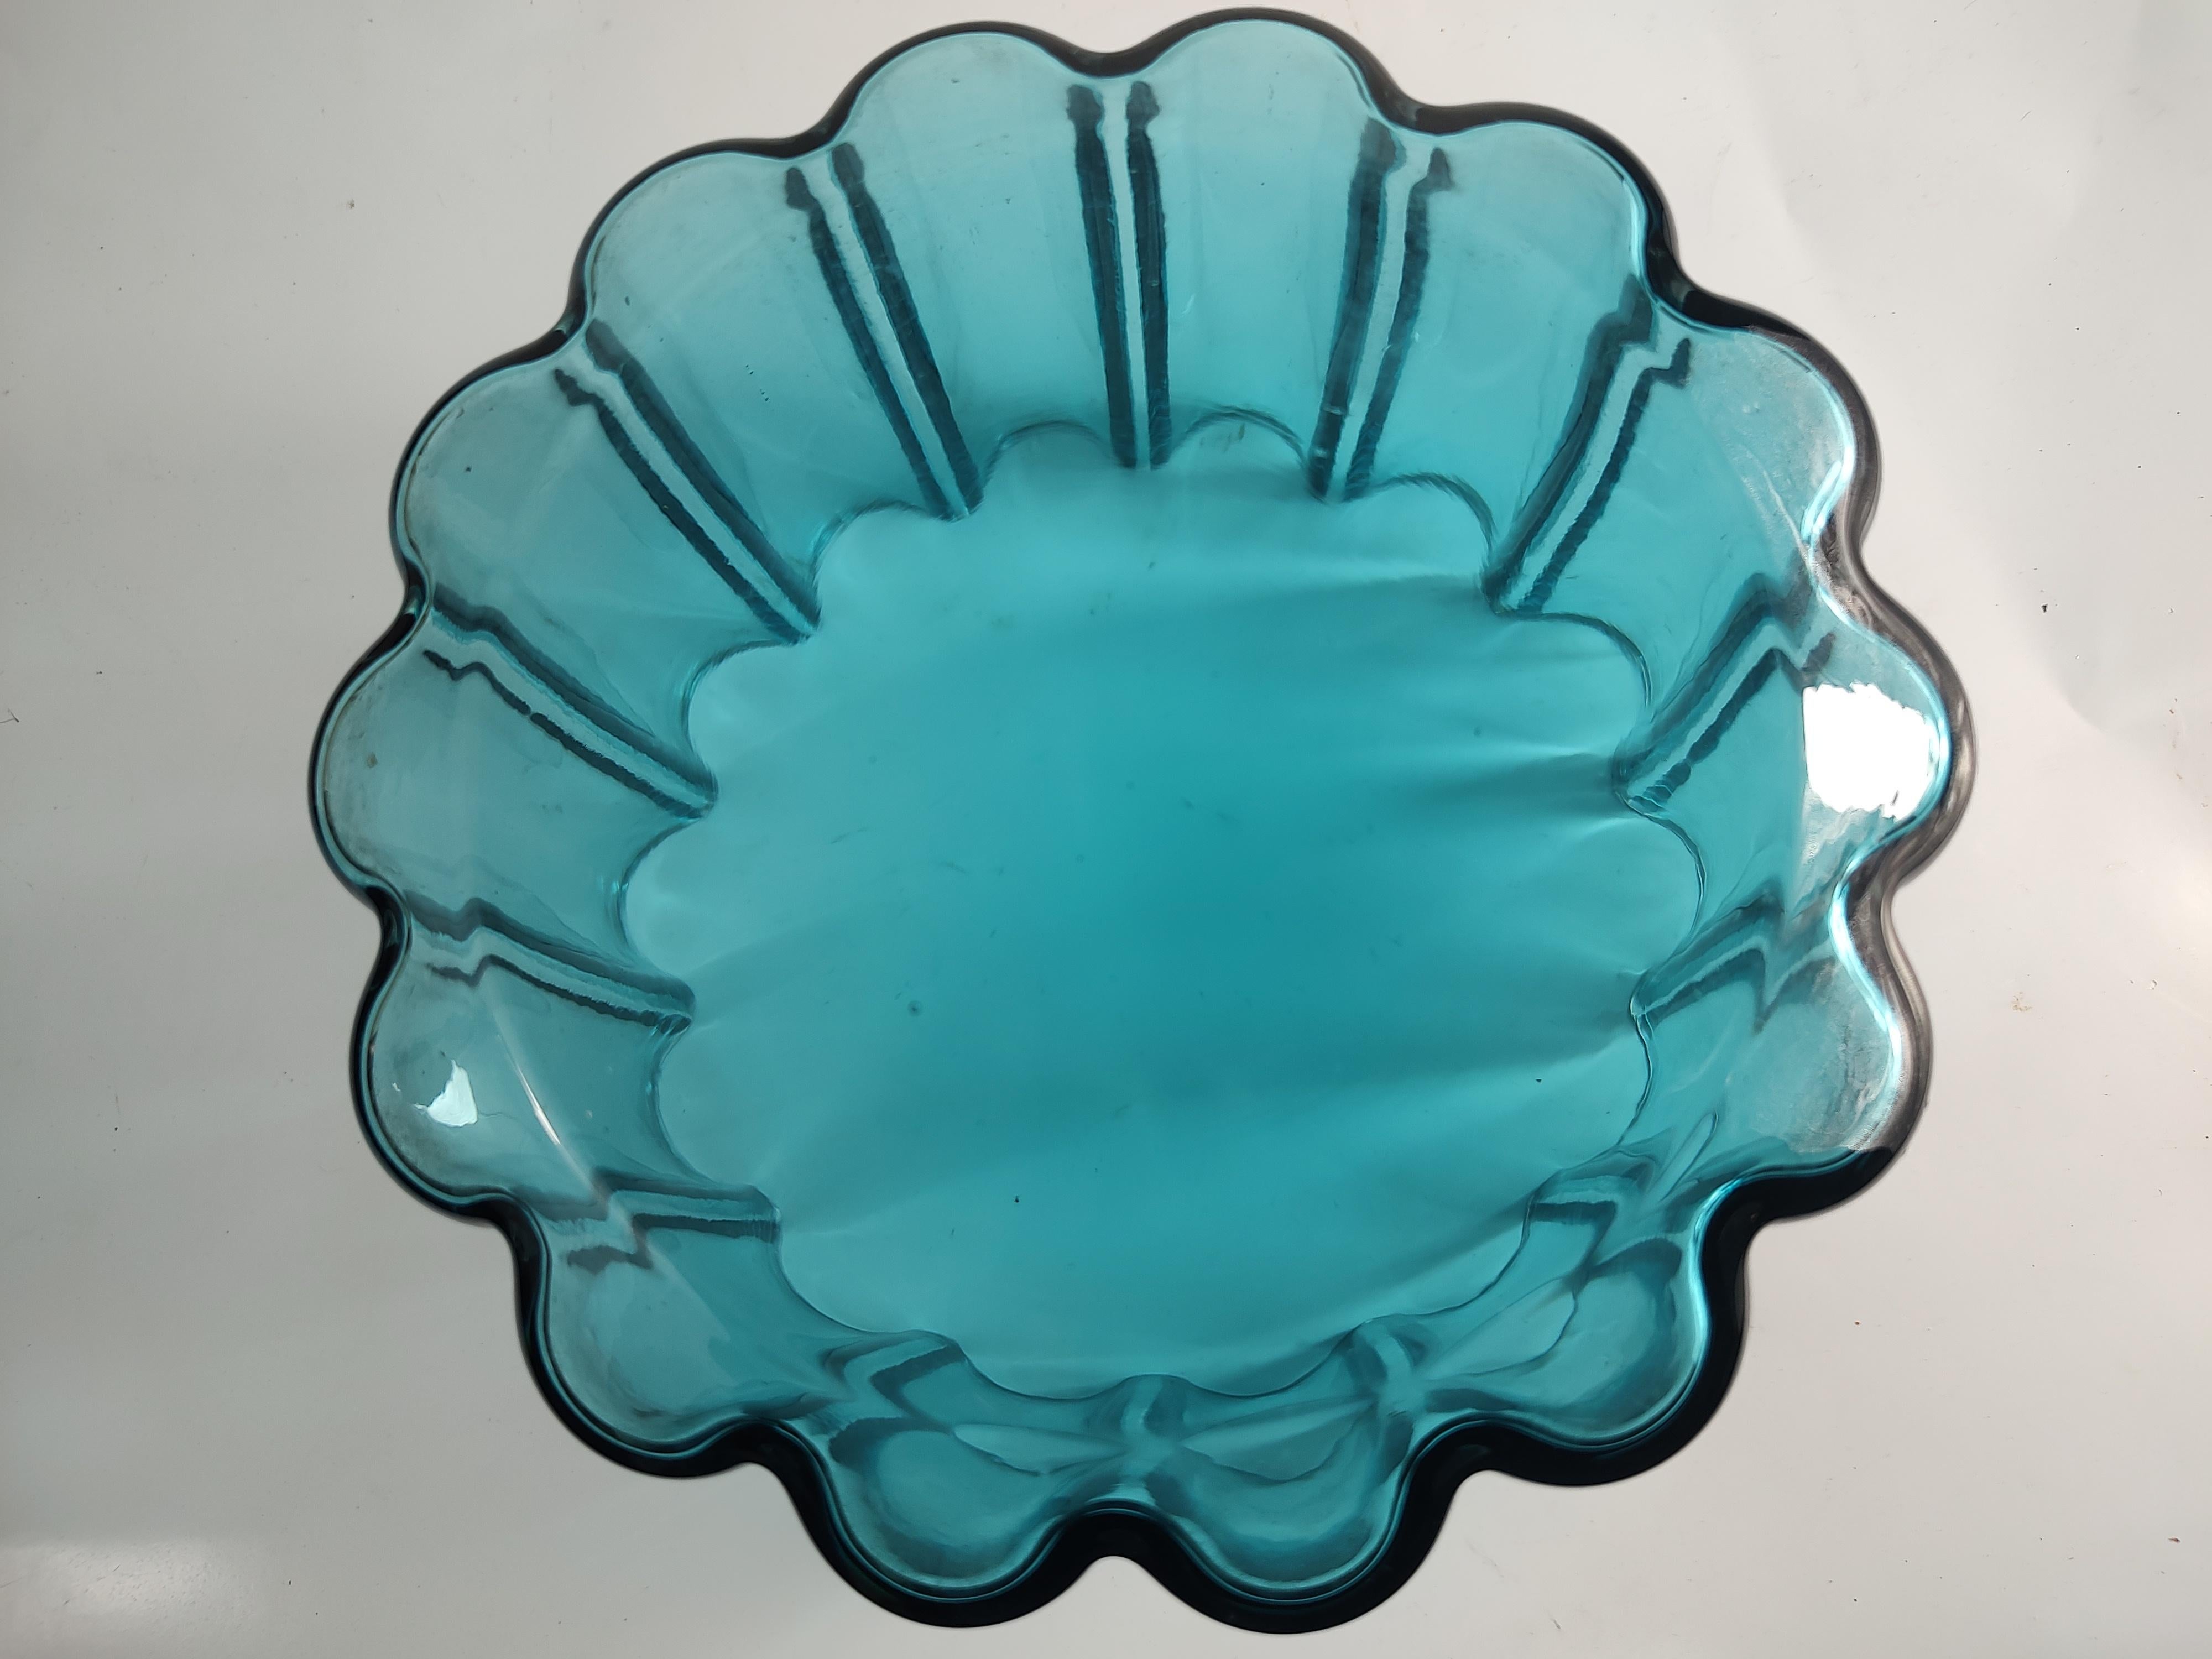 Danish Dansk Design Scalloped Blue Art Glass Vase Bowl by Jens Quistgaard For Sale